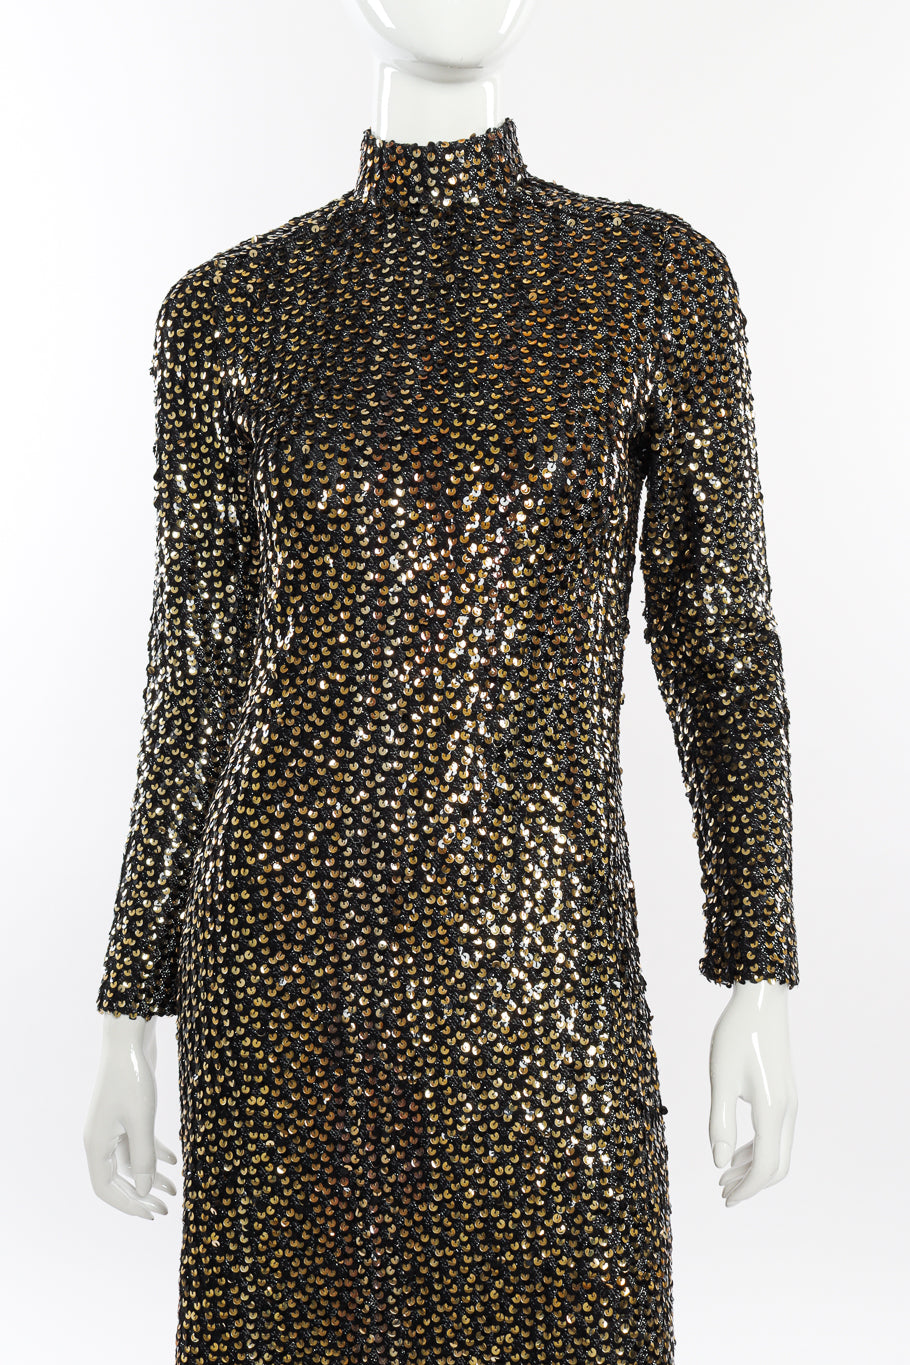 Vintage Anthony Muto Sequin Lamé Sheath Dress front on mannequin closeup @recessla